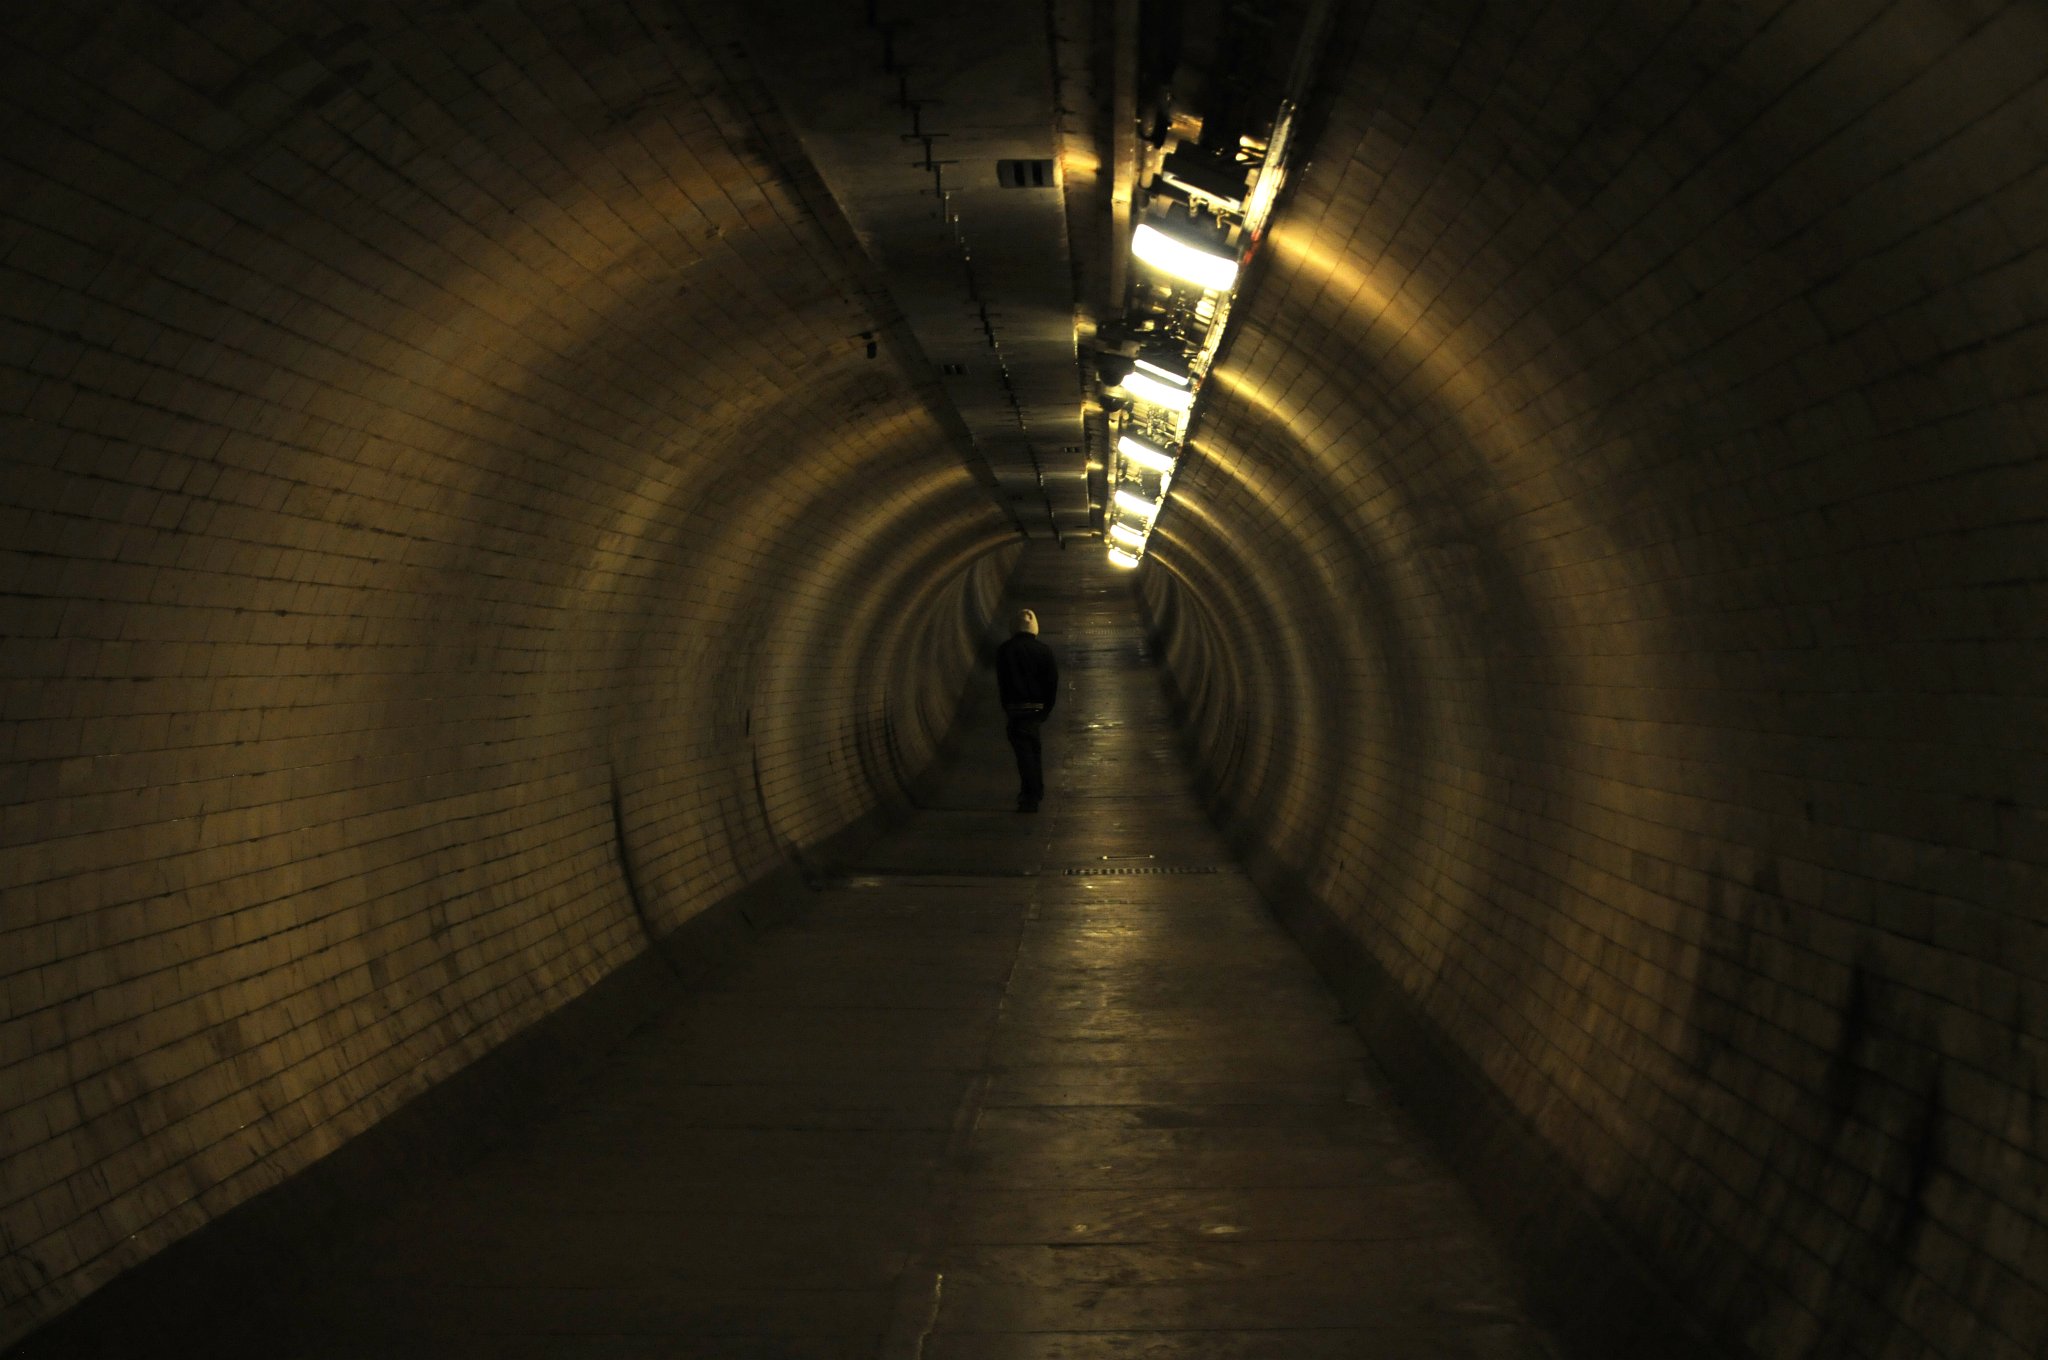 DSC_4326_1.jpg - Oba londýnské břehy Temže spojuje nejen přes třicet mostů, ale také řada tunelů pro pěší, pro motorová vozidla a samozřejmě také pro metro. První tunel pod řekou byl vybudován pro pěší v letech 1825 až 1843, a to mezi Rotherhithe a Wappingem. V druhé polovině 19. století byl rozšířen pro potřeby metra.